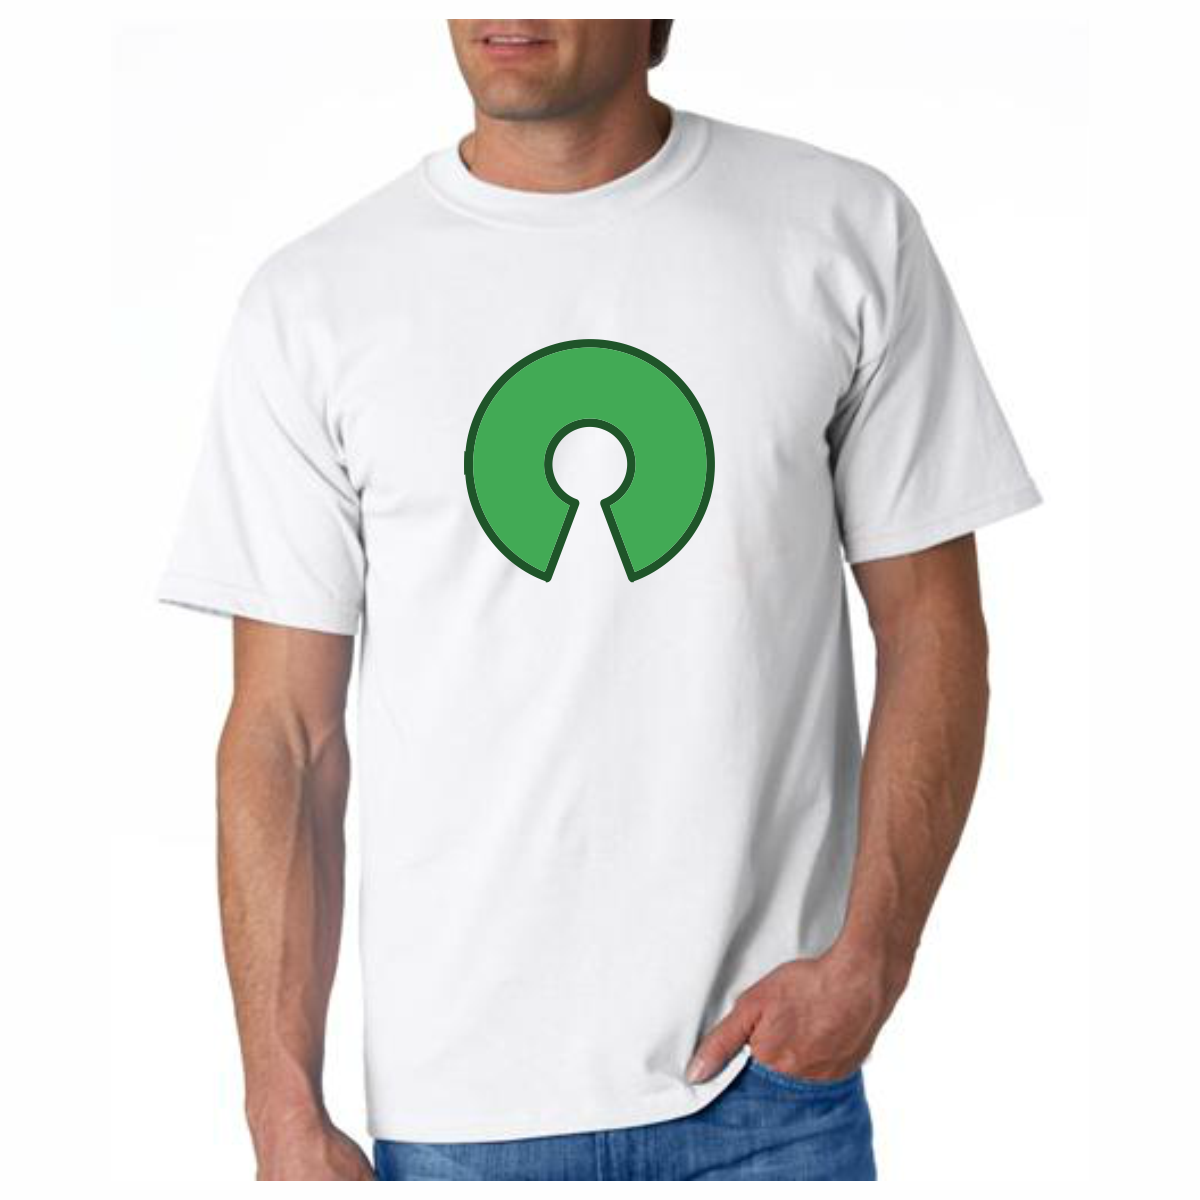 Open Source Software T-Shirt